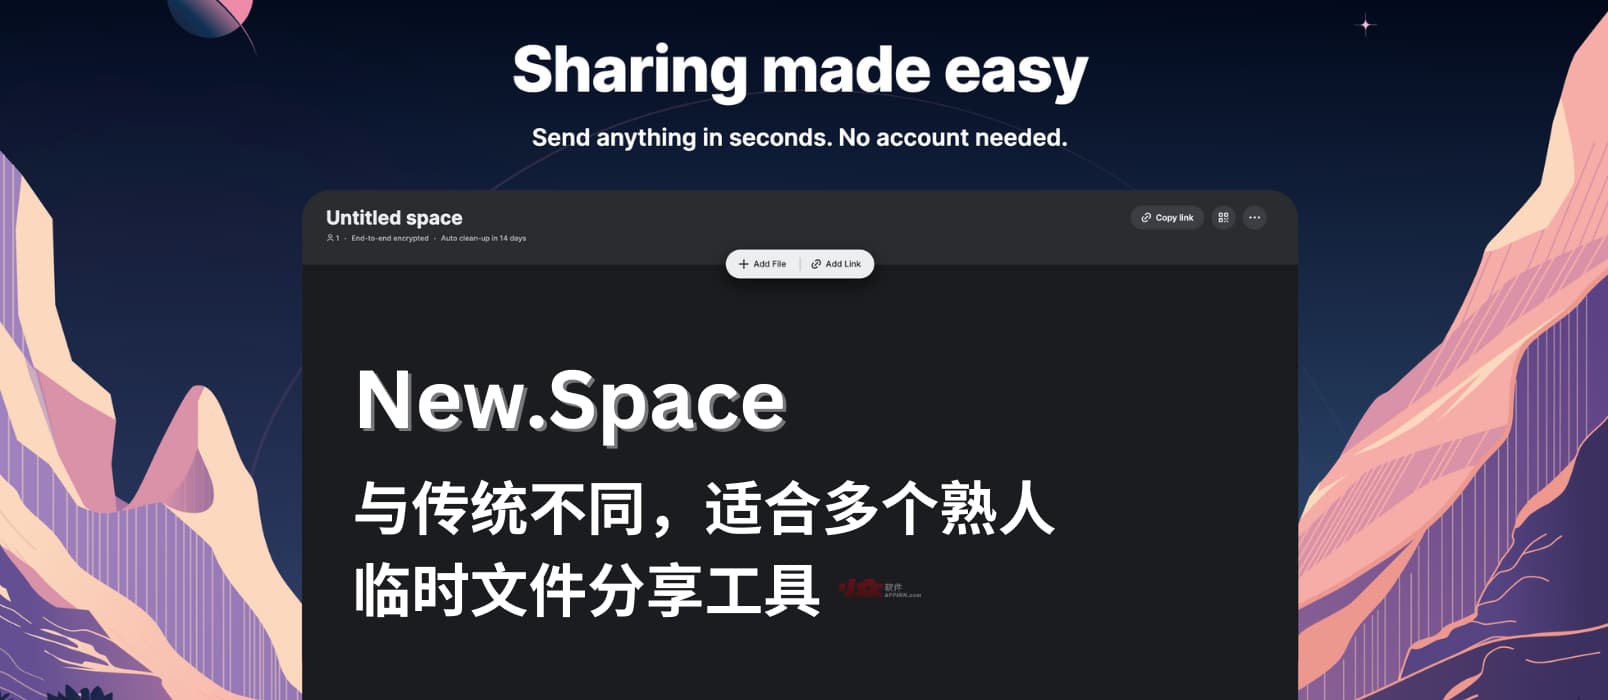 New.Space - 免注册多人临时文件分享工具｜与传统文件分享方式不太一样